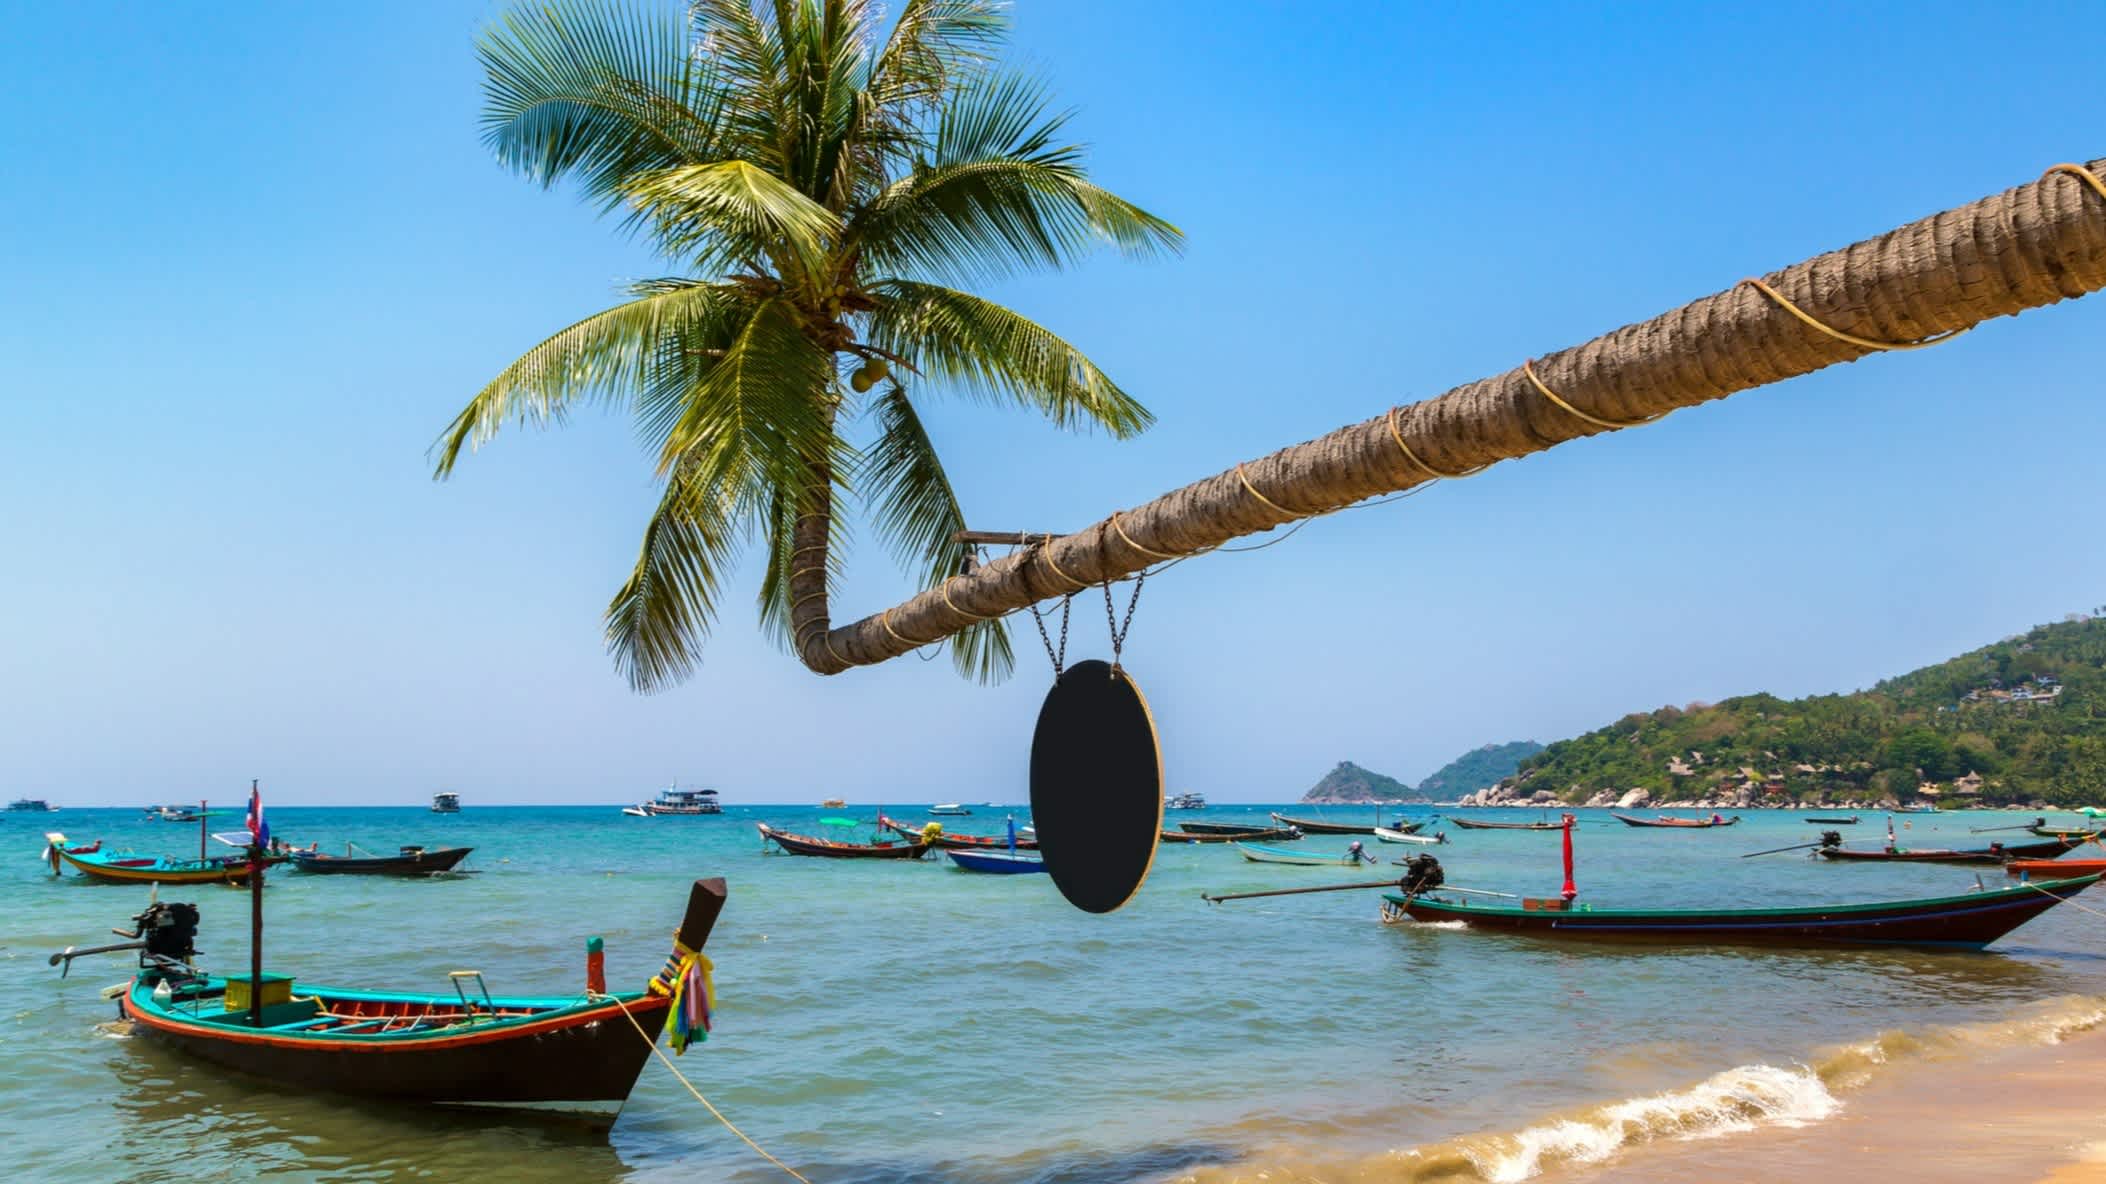 Palmier au-dessus des bateaux sur l'eau turquoise de la plage de Sairee sur l'île de Koh Tao en Thaïlande 